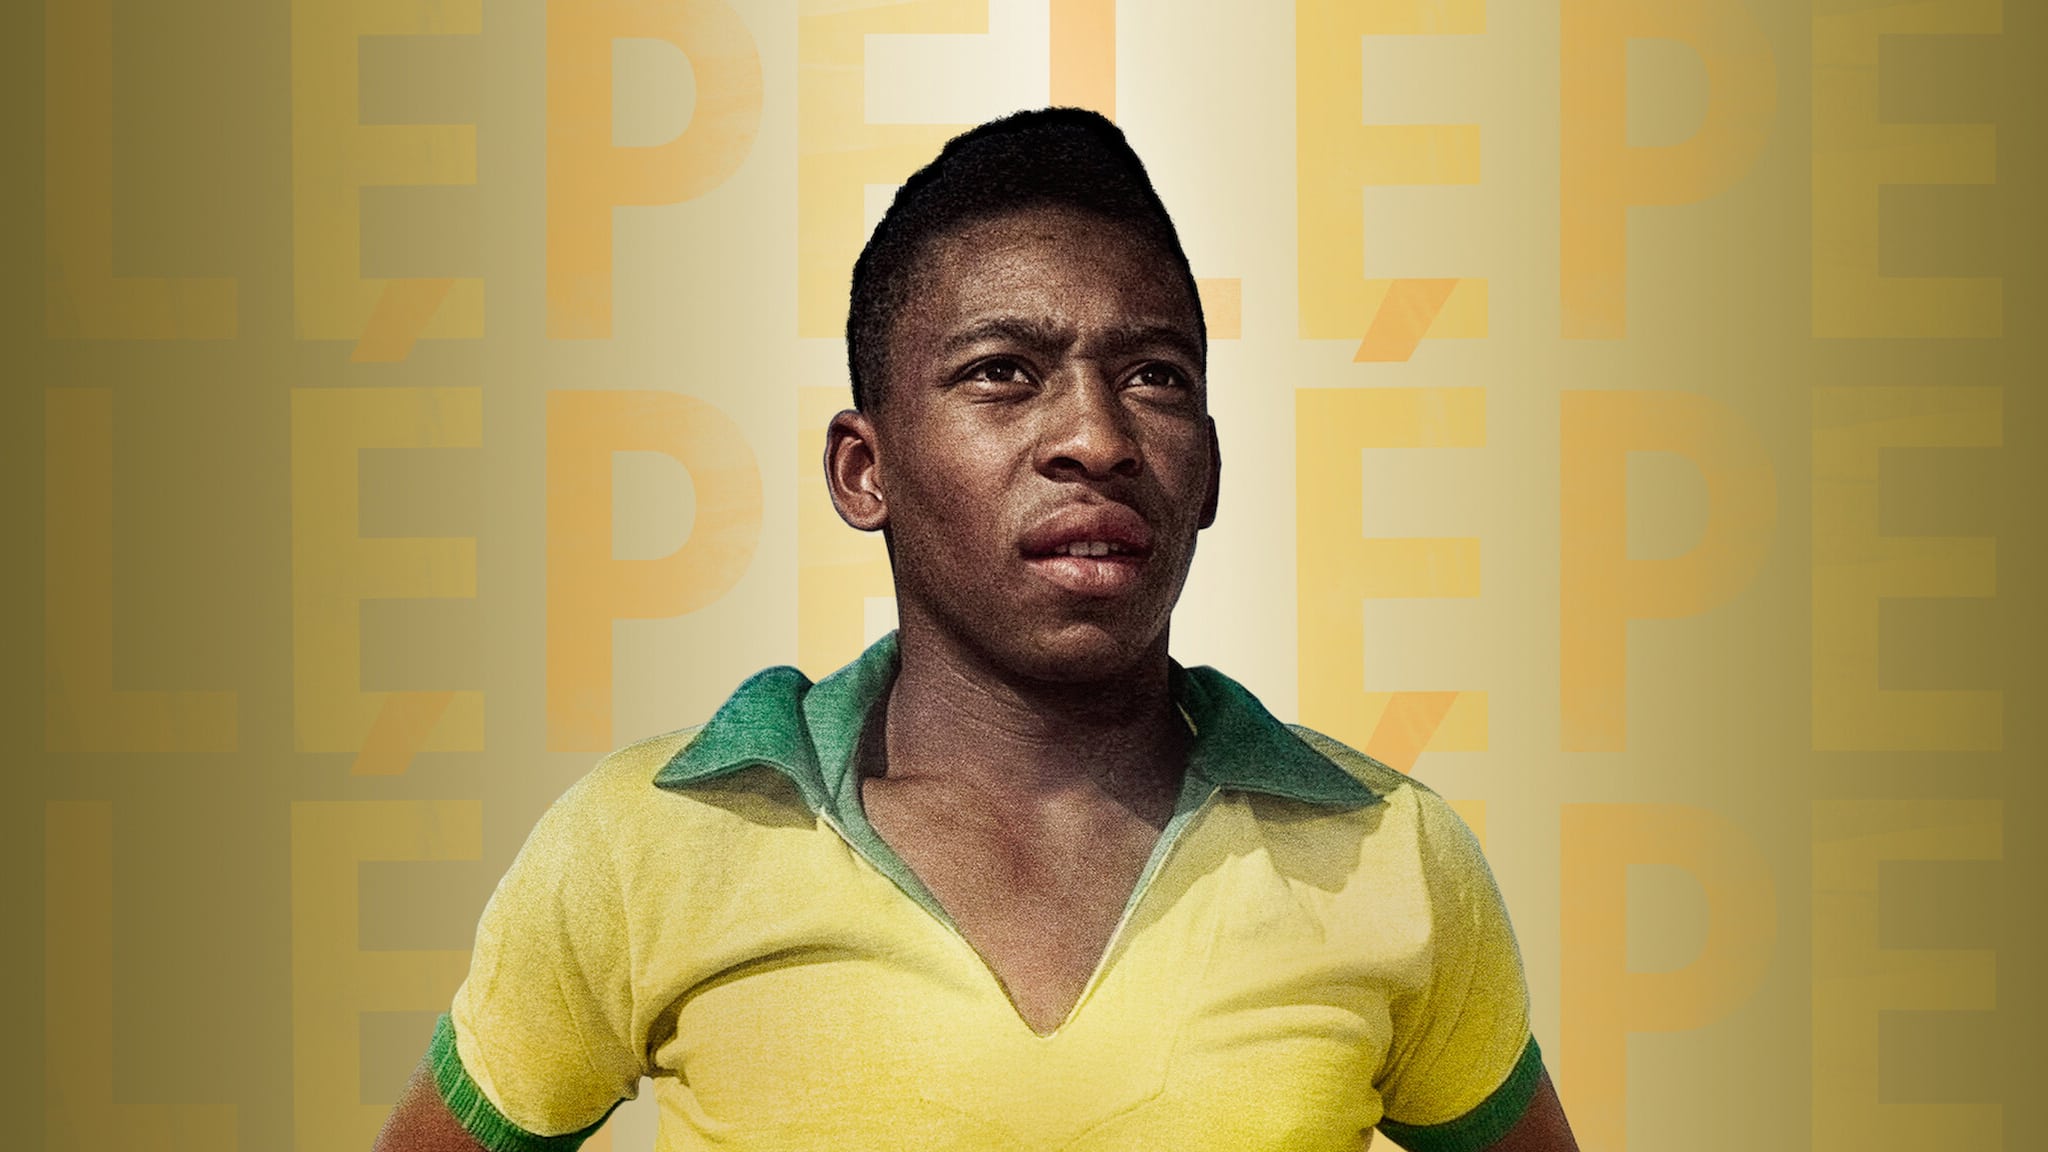 Pelé (2021) Full Movie - Online For Free | BestMovie2021